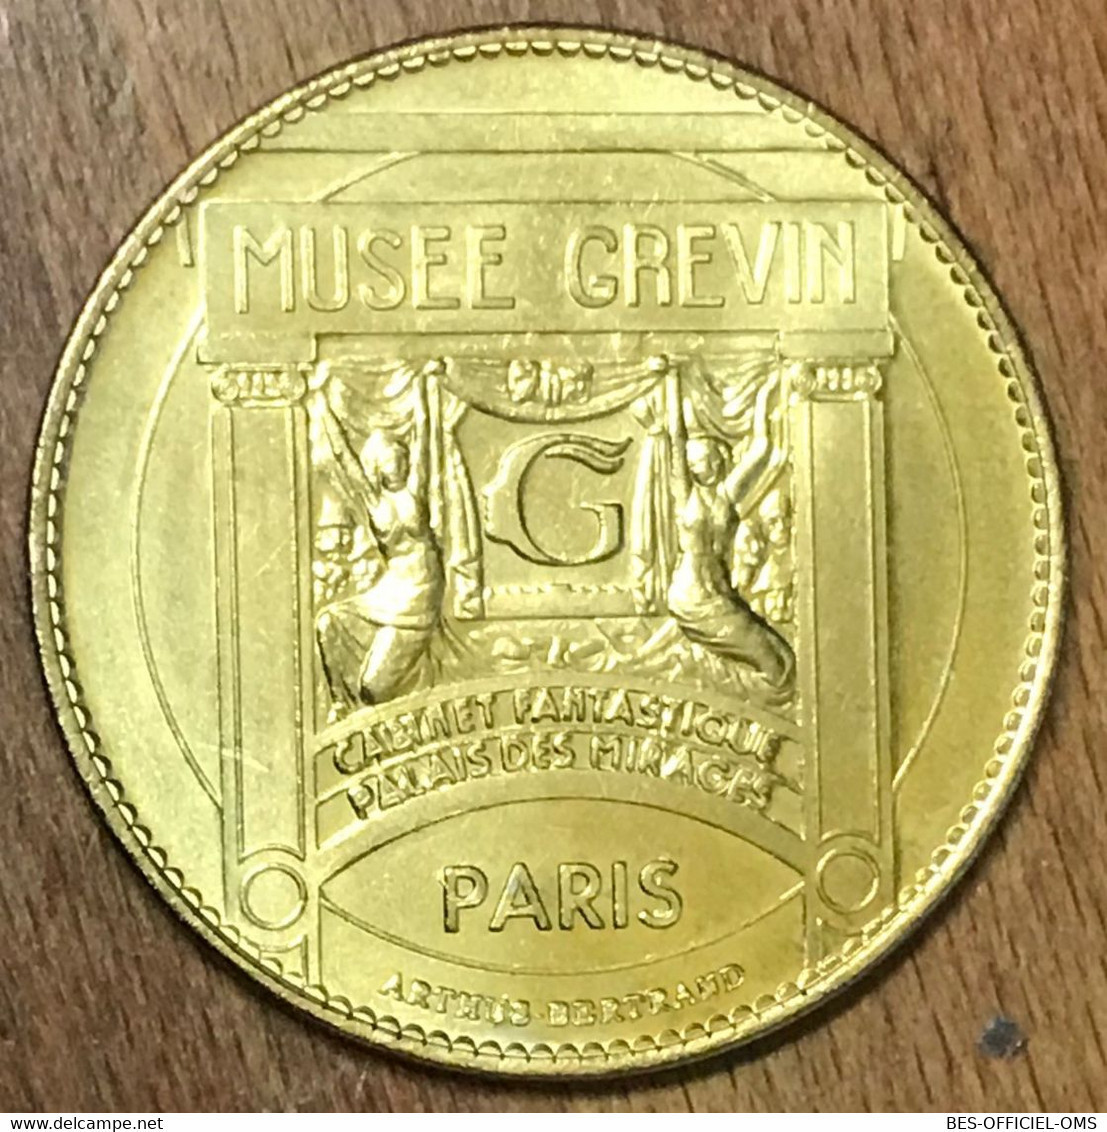 75009 MICHAEL JACKSON PARIS MUSÉE GRÉVIN AB MEDAILLE ARTHUS-BERTRAND JETON TOURISTIQUE MEDALS COINS TOKENS - Undated